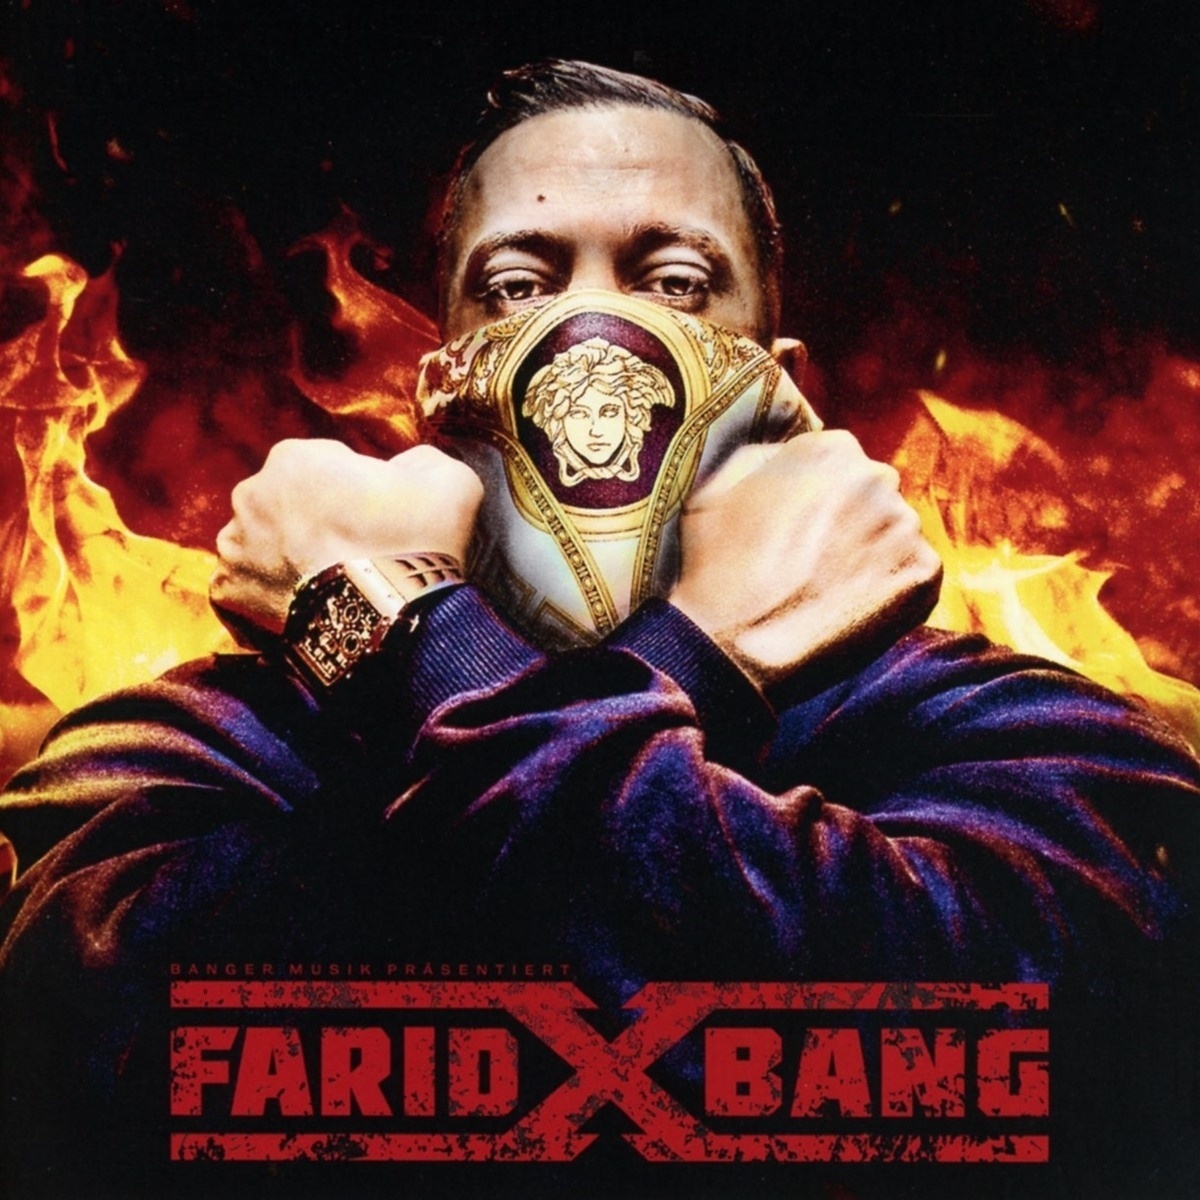 X - Farid Bang. (CD)